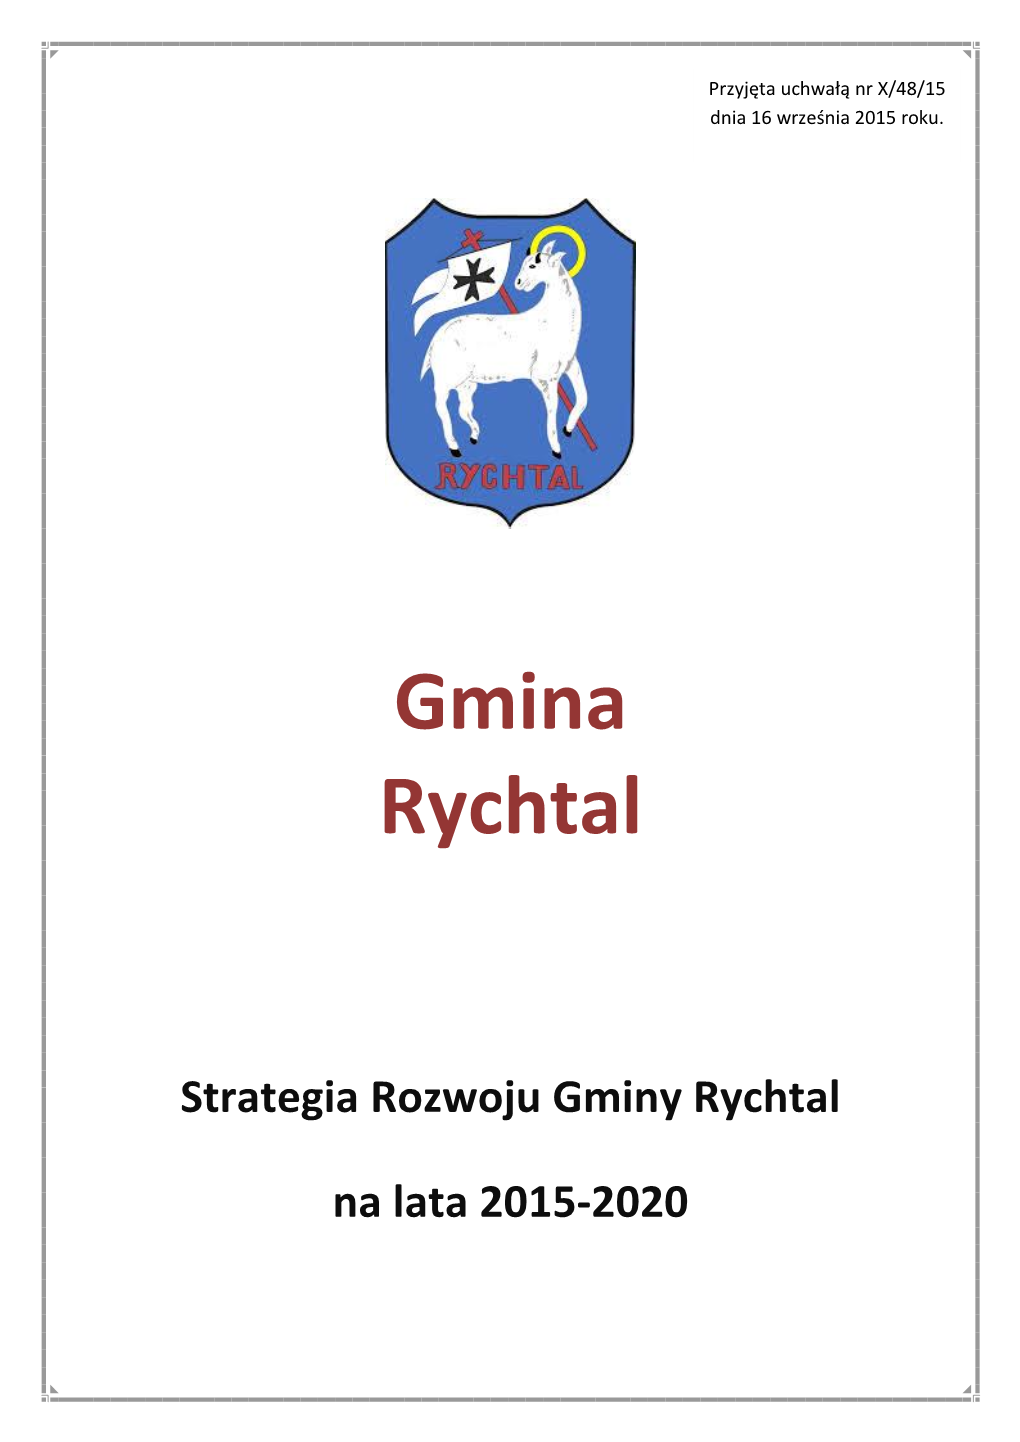 Strategia Rozwoju Gminy Rychtal Na Lata 2015-2020” Jest Centralnym Dokumentem Strategicznym Gminy